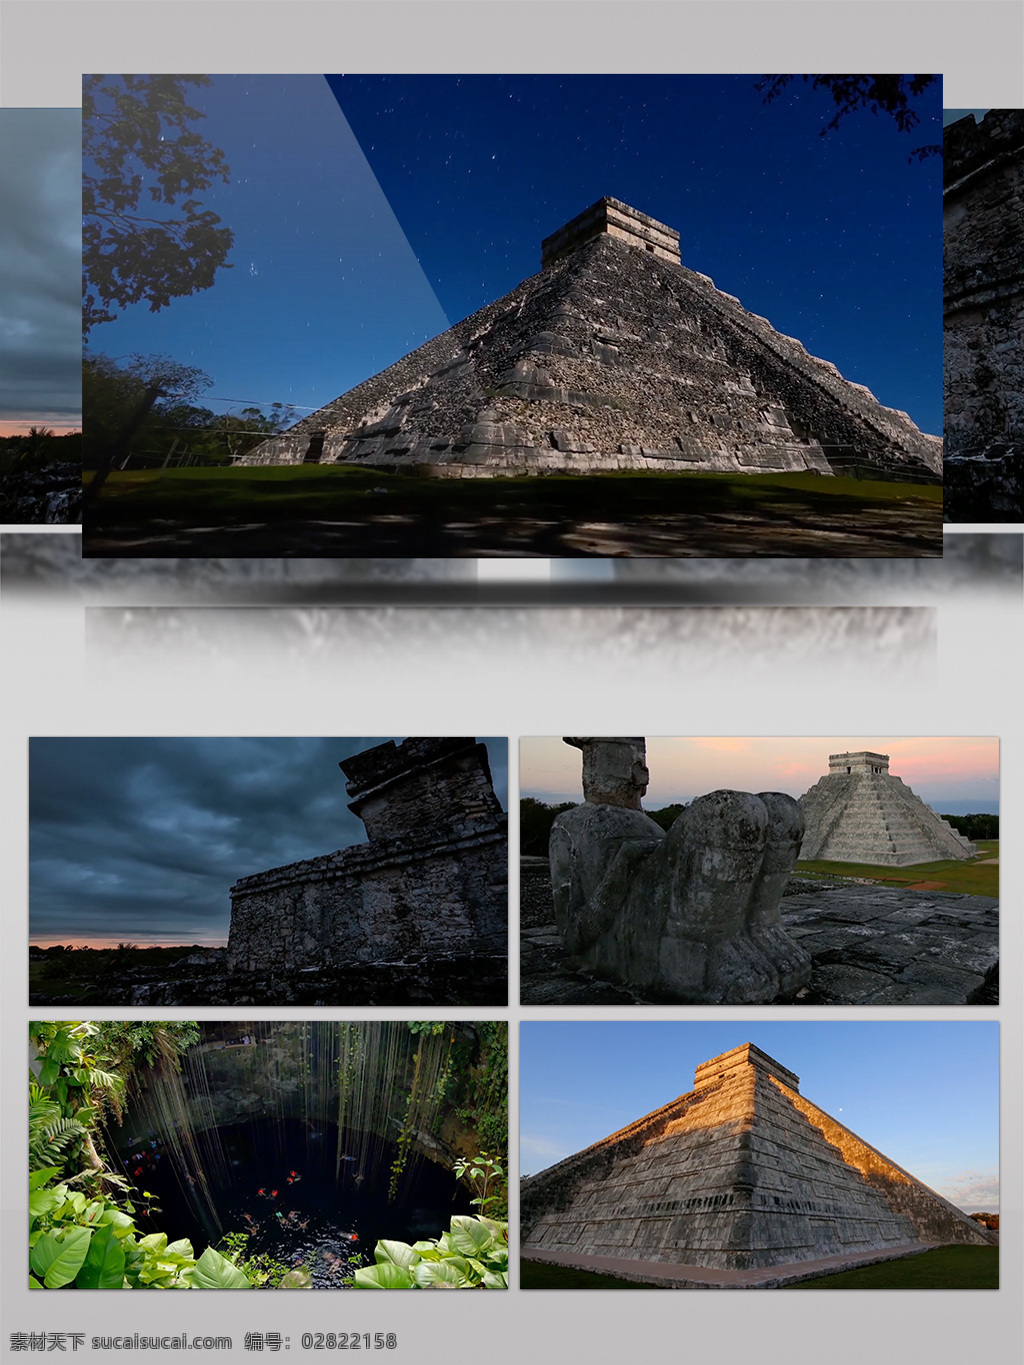 古代 玛雅 文明 遗迹 金字塔 高清 实拍 视频 2018年 地理风光 高清实拍 古文明 航拍 玛雅文明 实拍视频 实拍素材 世界遗迹 星空 延时 震撼大气 自然风光